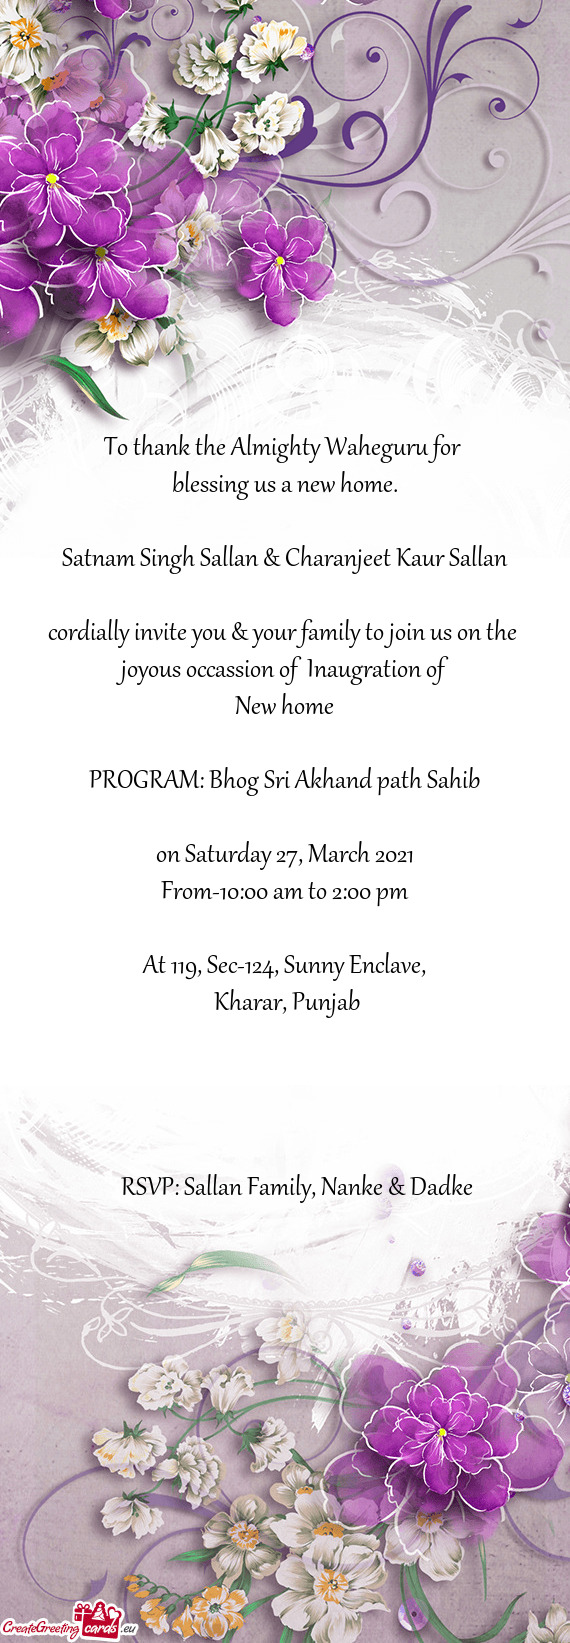 Satnam Singh Sallan & Charanjeet Kaur Sallan